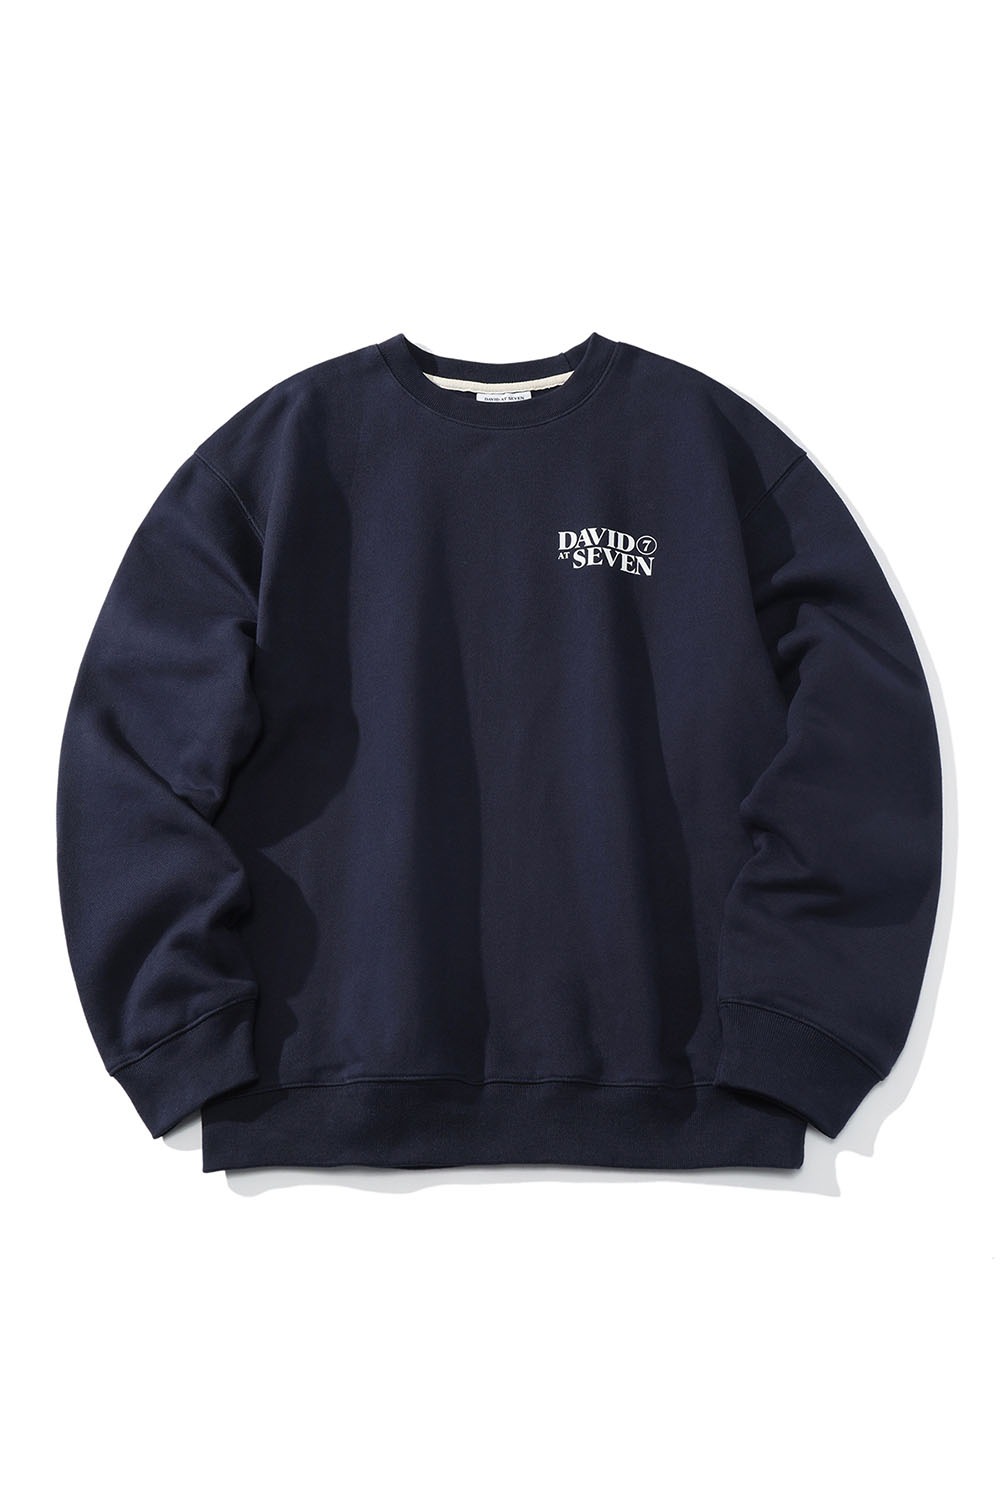 (단독가) With David logo sweatshirts (navy) RICHEZ